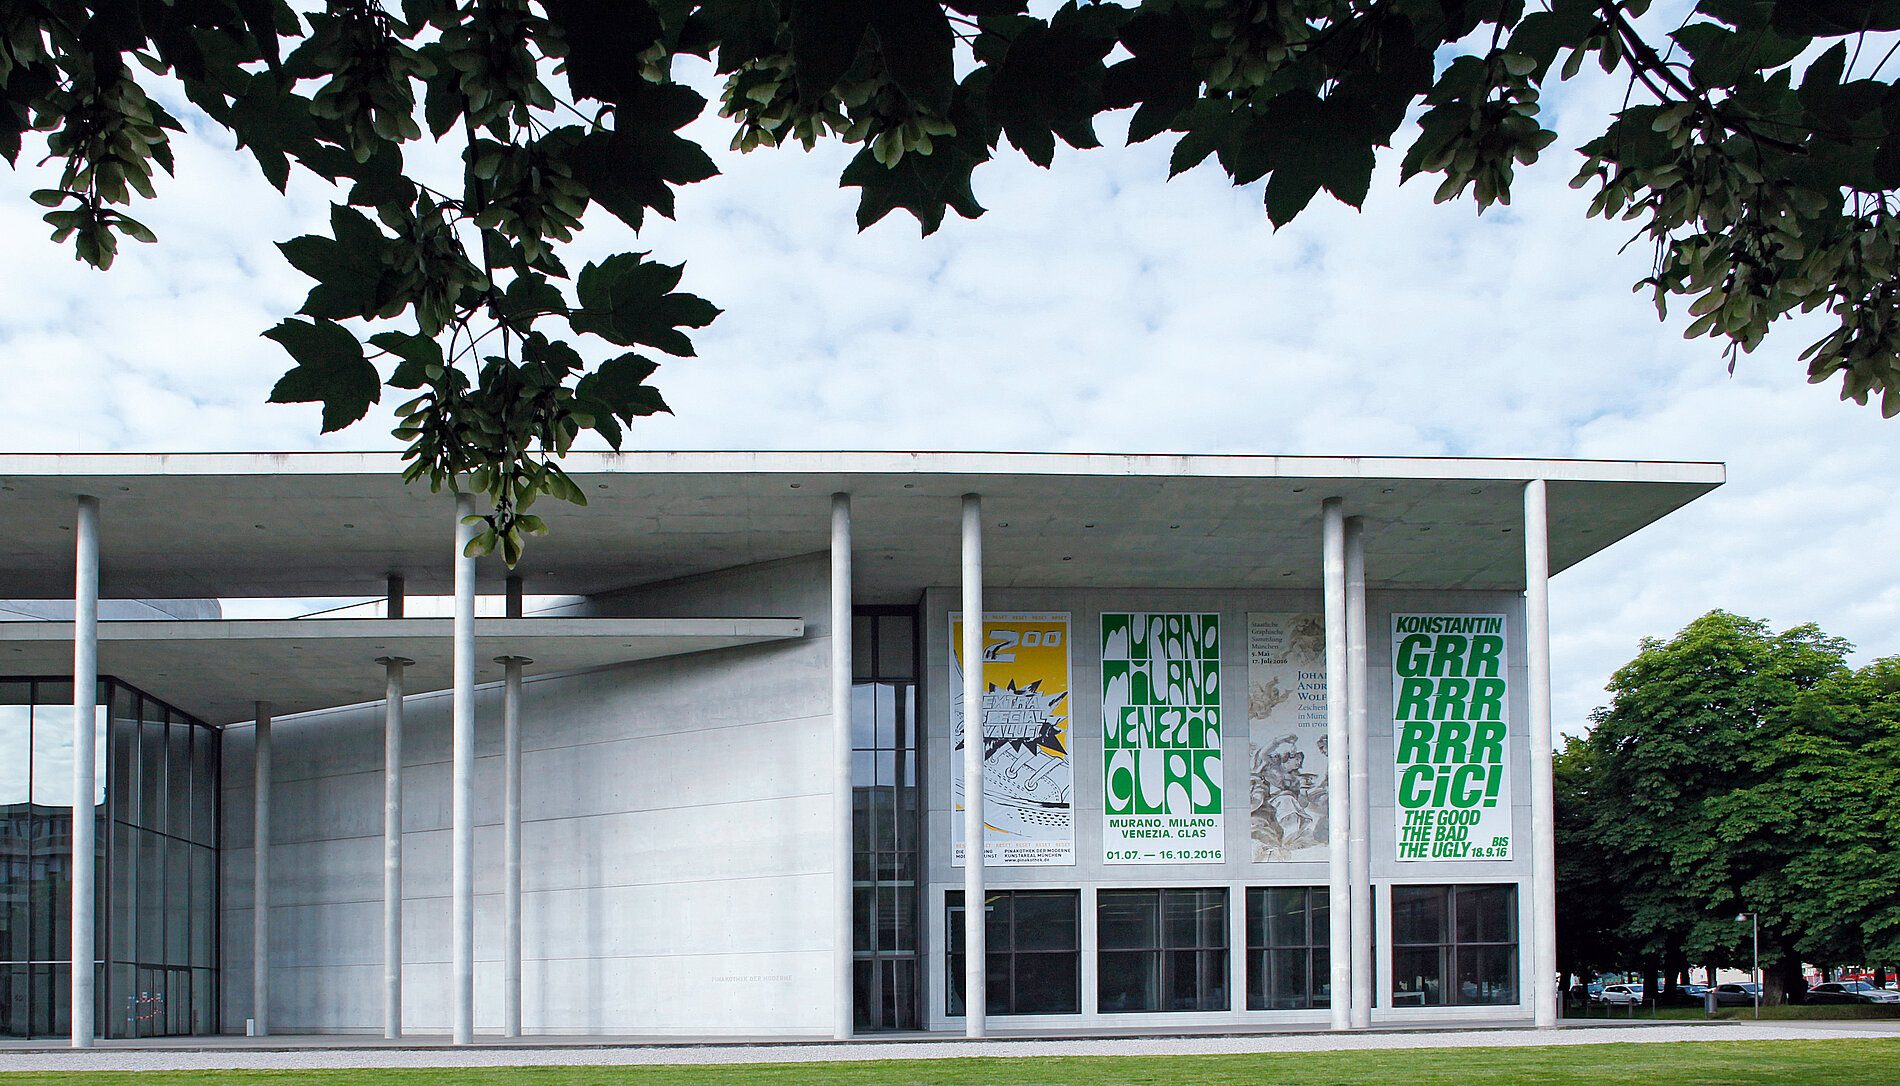 Aussenansicht der Pinakothek der Moderne mit 4 Bannern der 4 Museen. Rechts das Banner für die Ausstellung "The Good, The Bad, The Ugly" in der Neuen Sammlung, grün auf weiß.